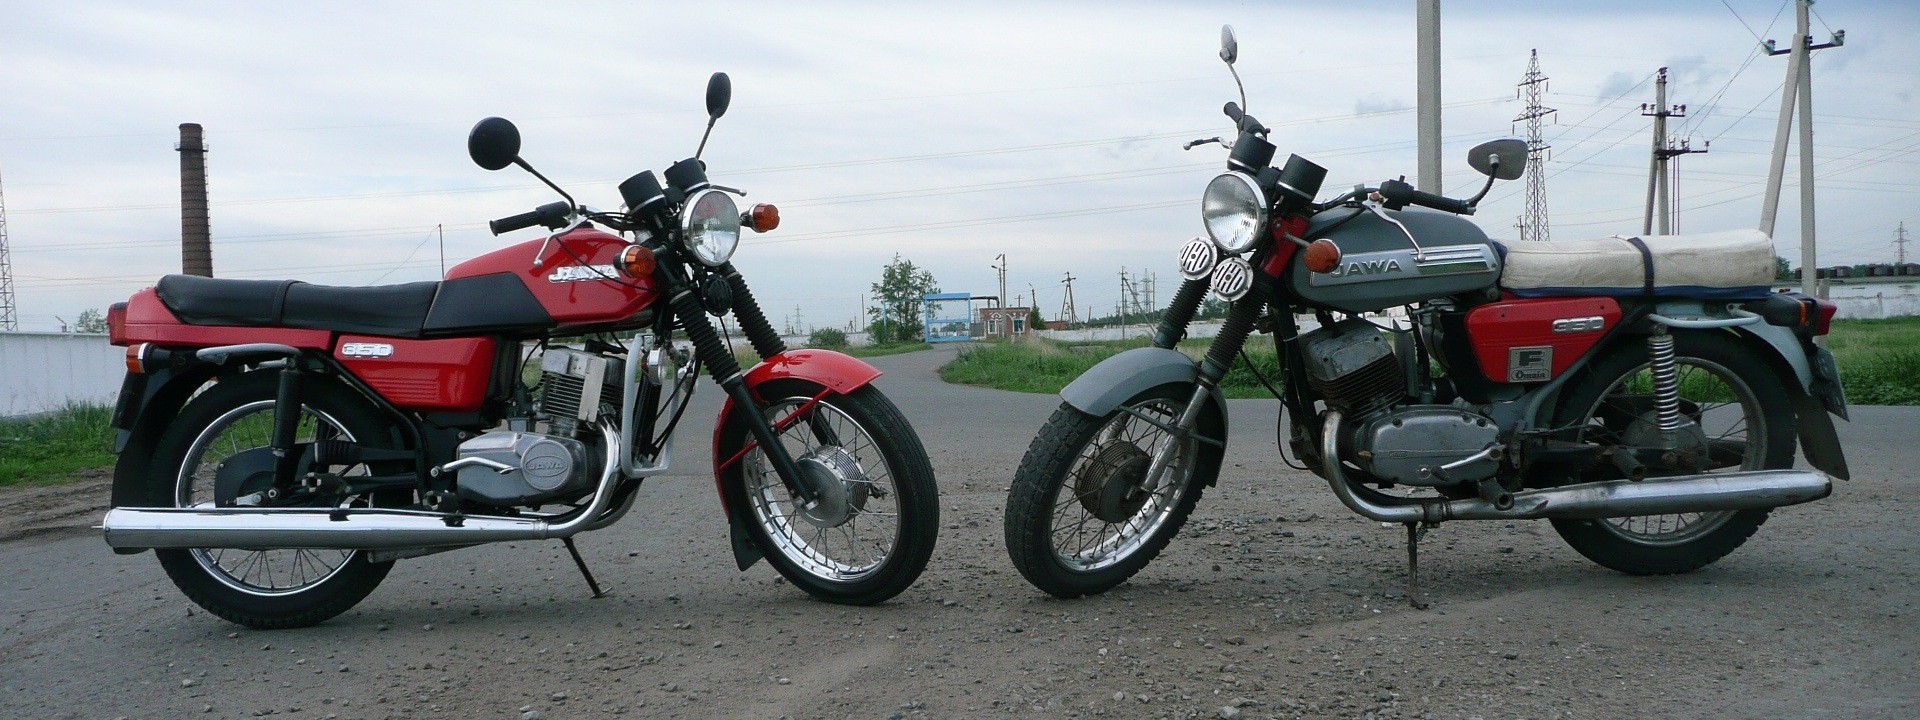 Семейные ценности мотоцикл Jawa-350 «Капелька» фото видео